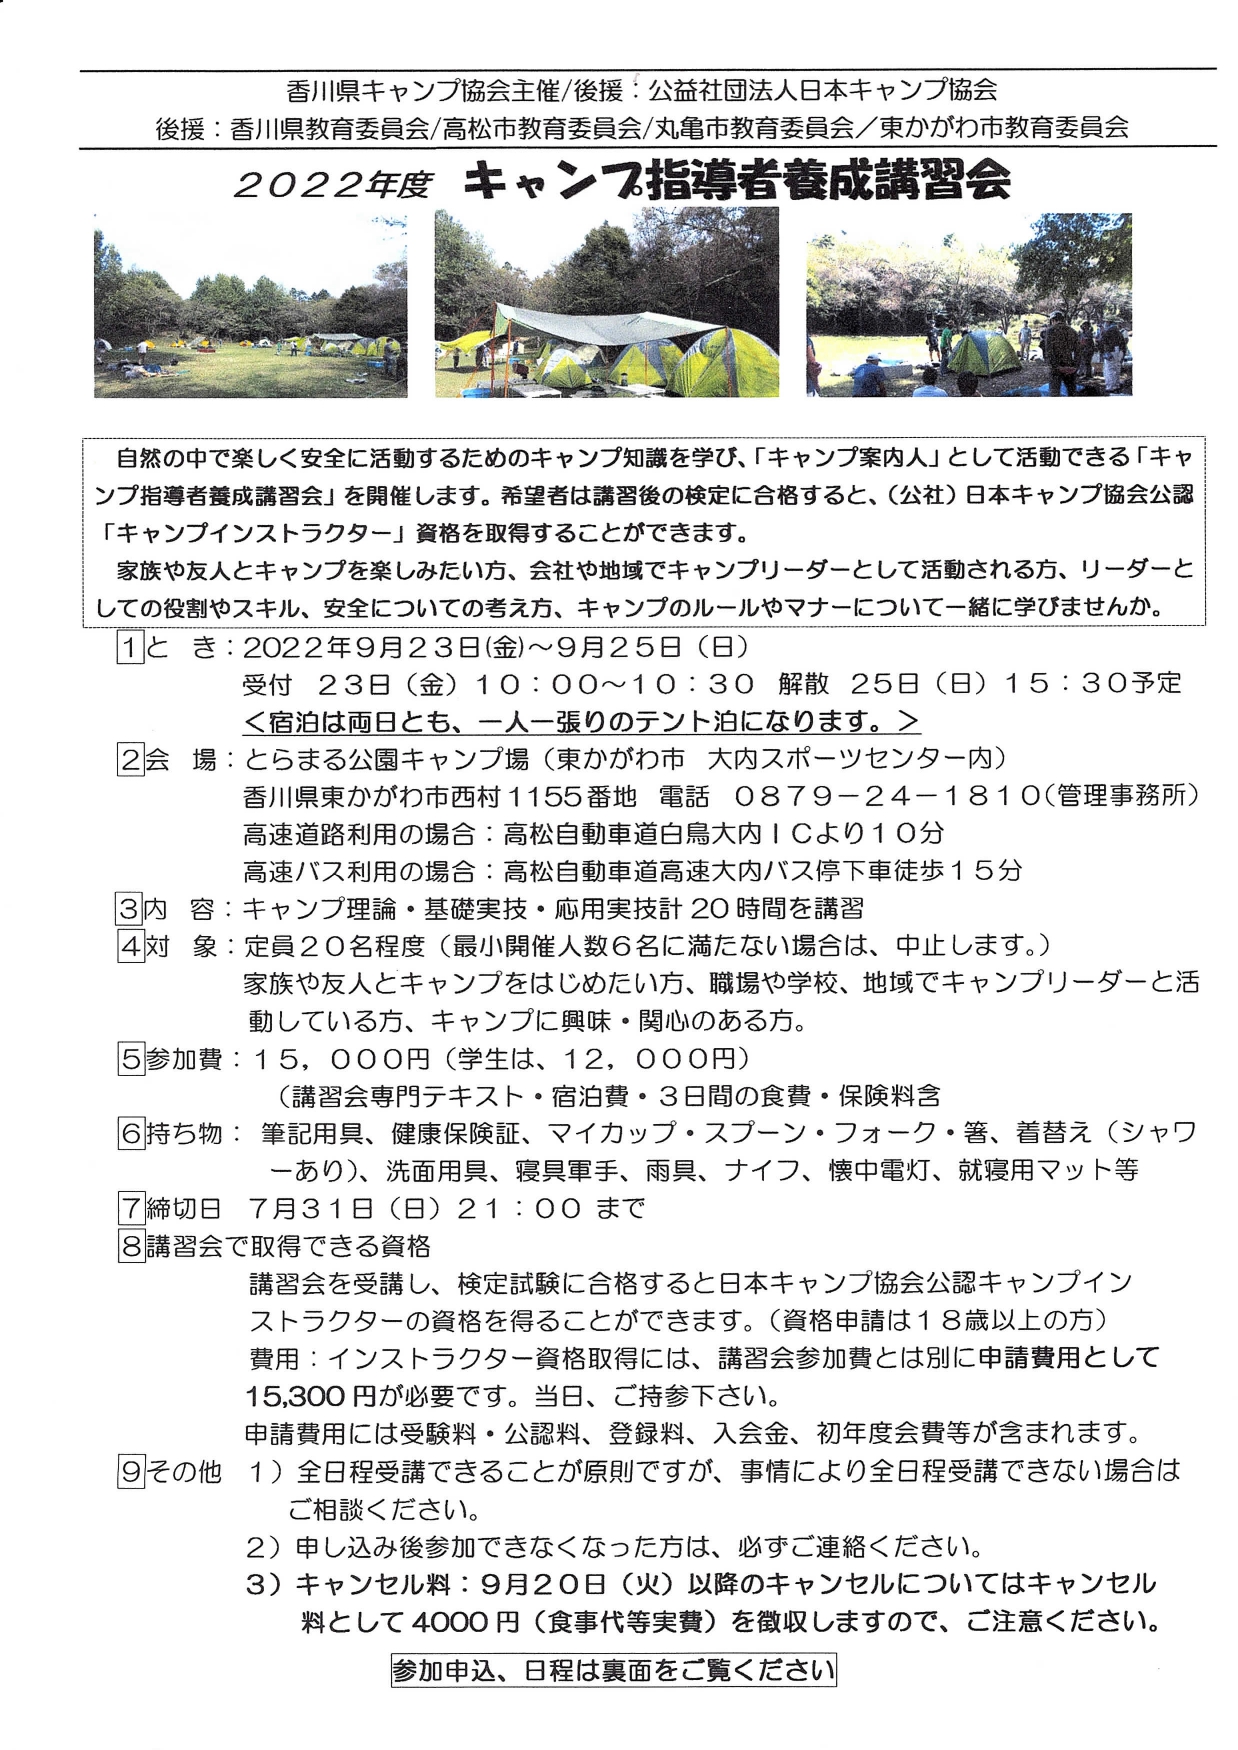 香川：キャンプ指導者養成講習会（9/23～25） @ とらまる公園キャンプ場（東かがわ市大内スポーツセンター内）